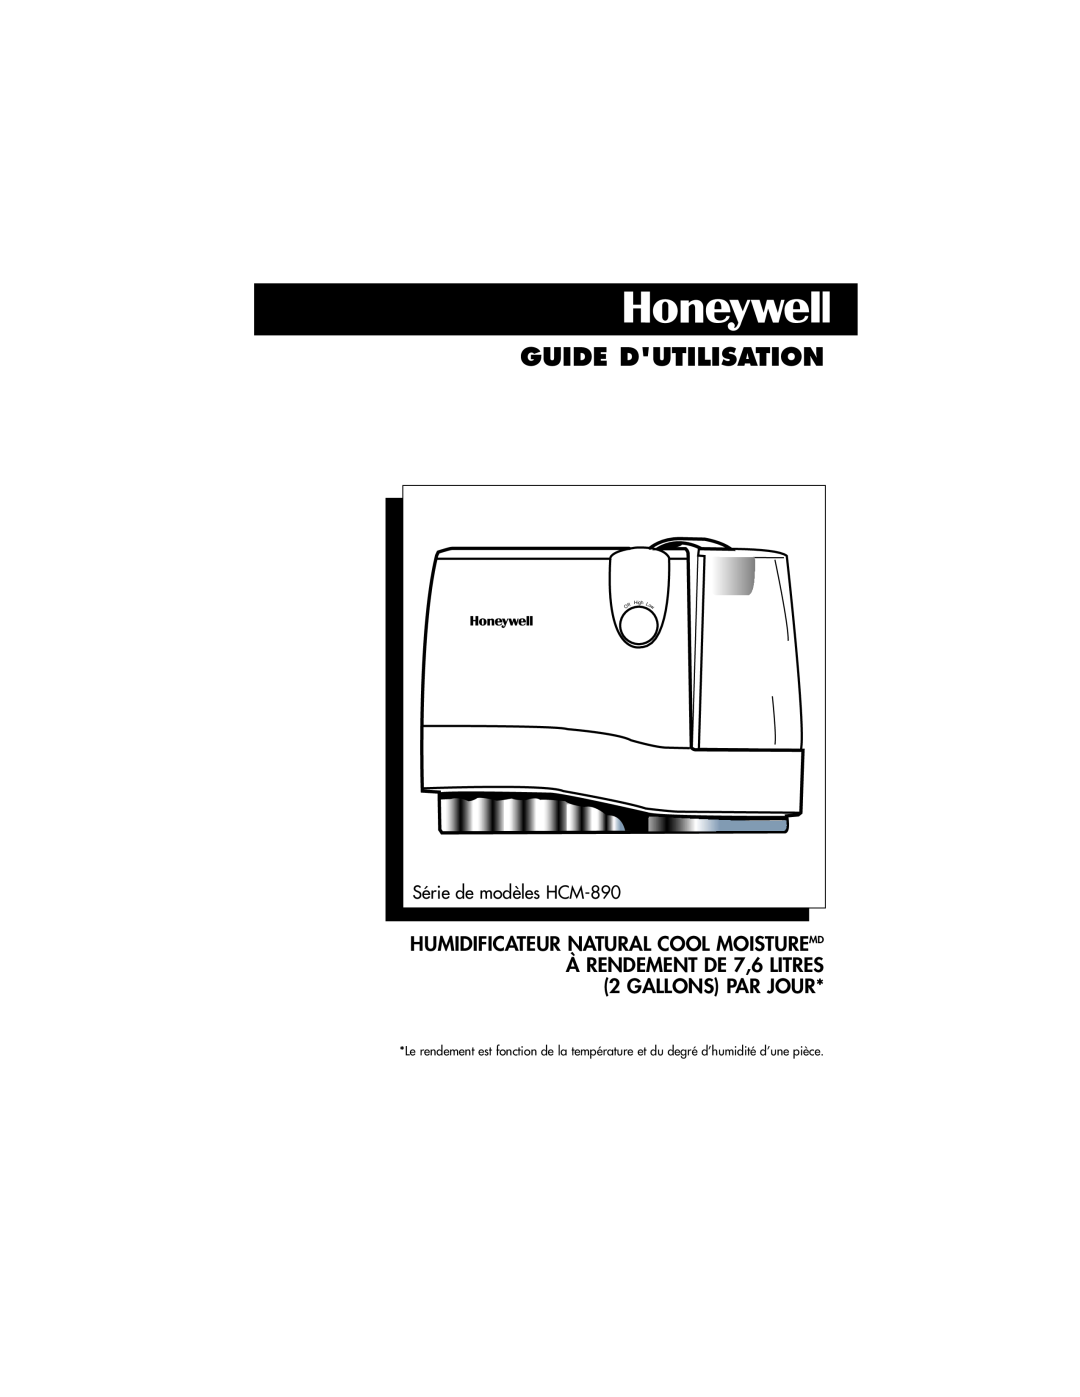 Honeywell HCM-890 Guide Dutilisation, Humidificateur Natural Cool Moisturemd, ÀRENDEMENT DE 7,6 LITRES 2 GALLONS PAR JOUR 